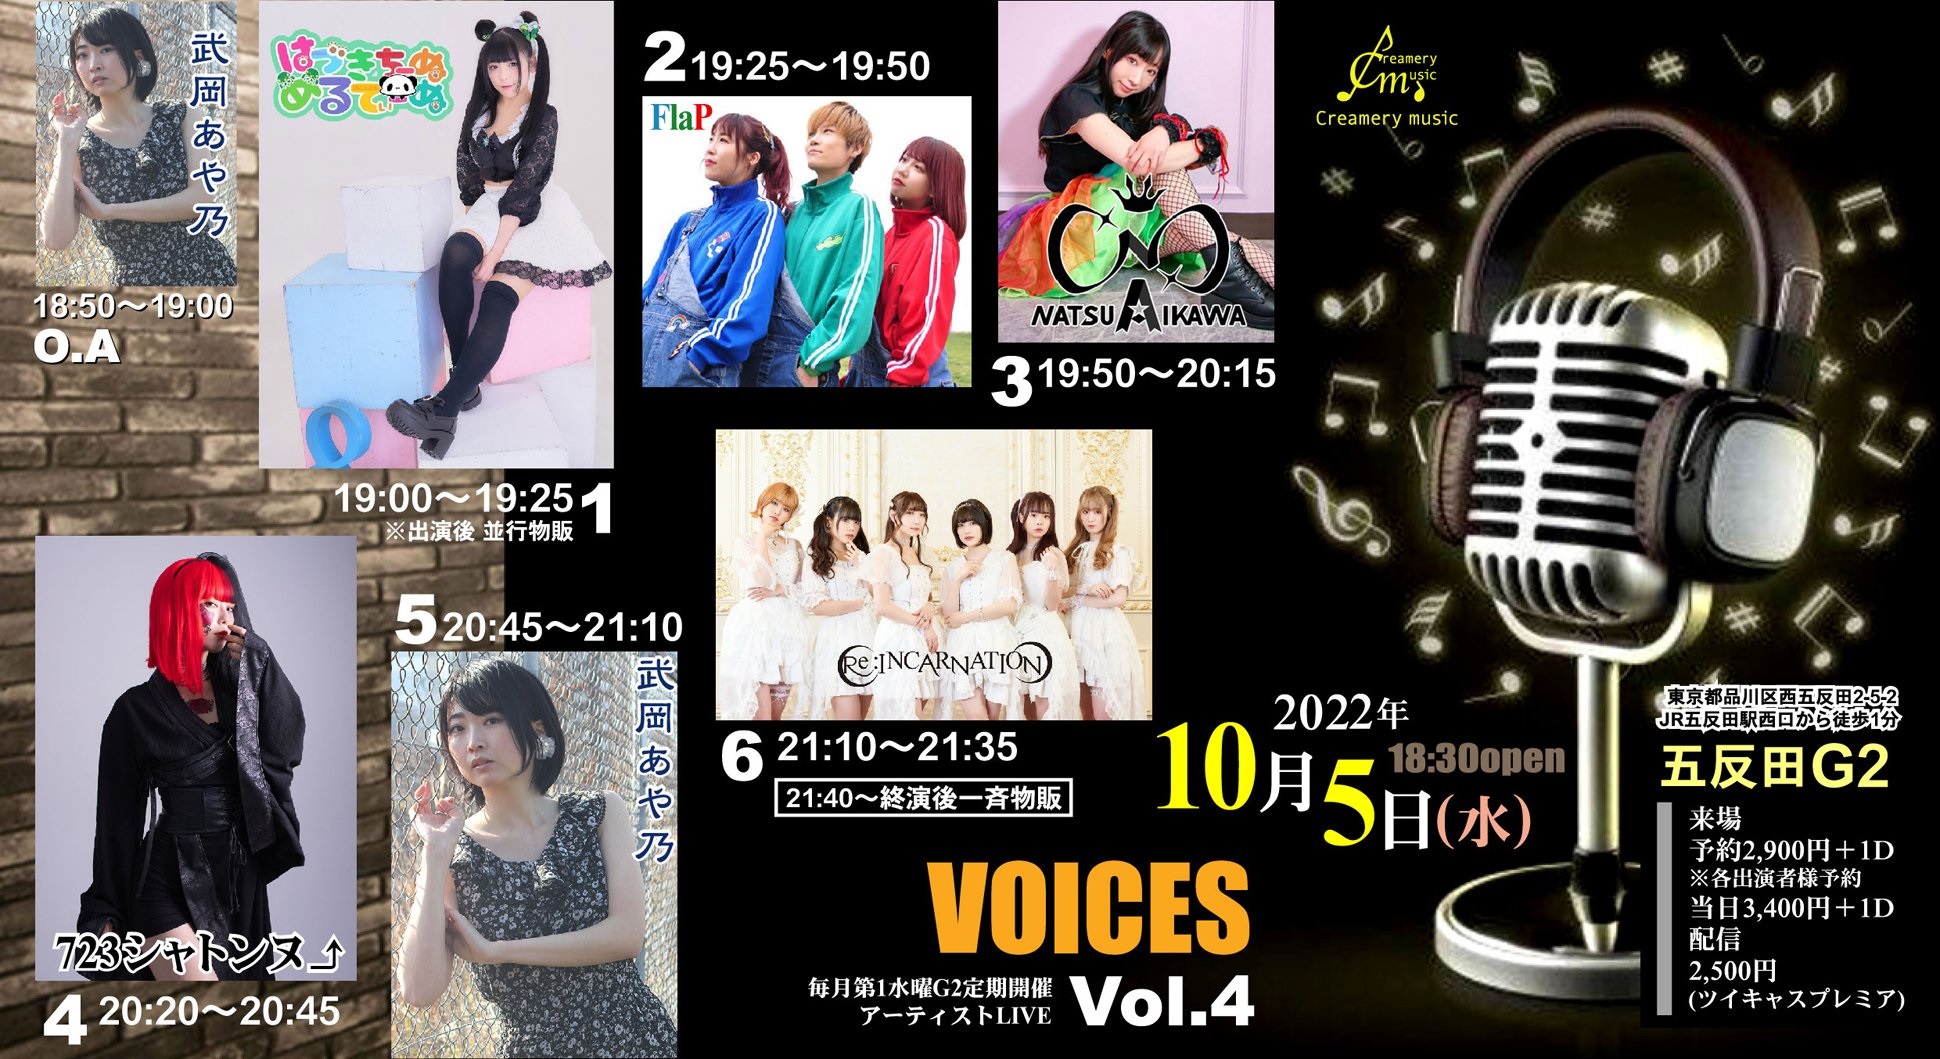 10月5日(水)「VOICES Vol.4」に出演します!!!